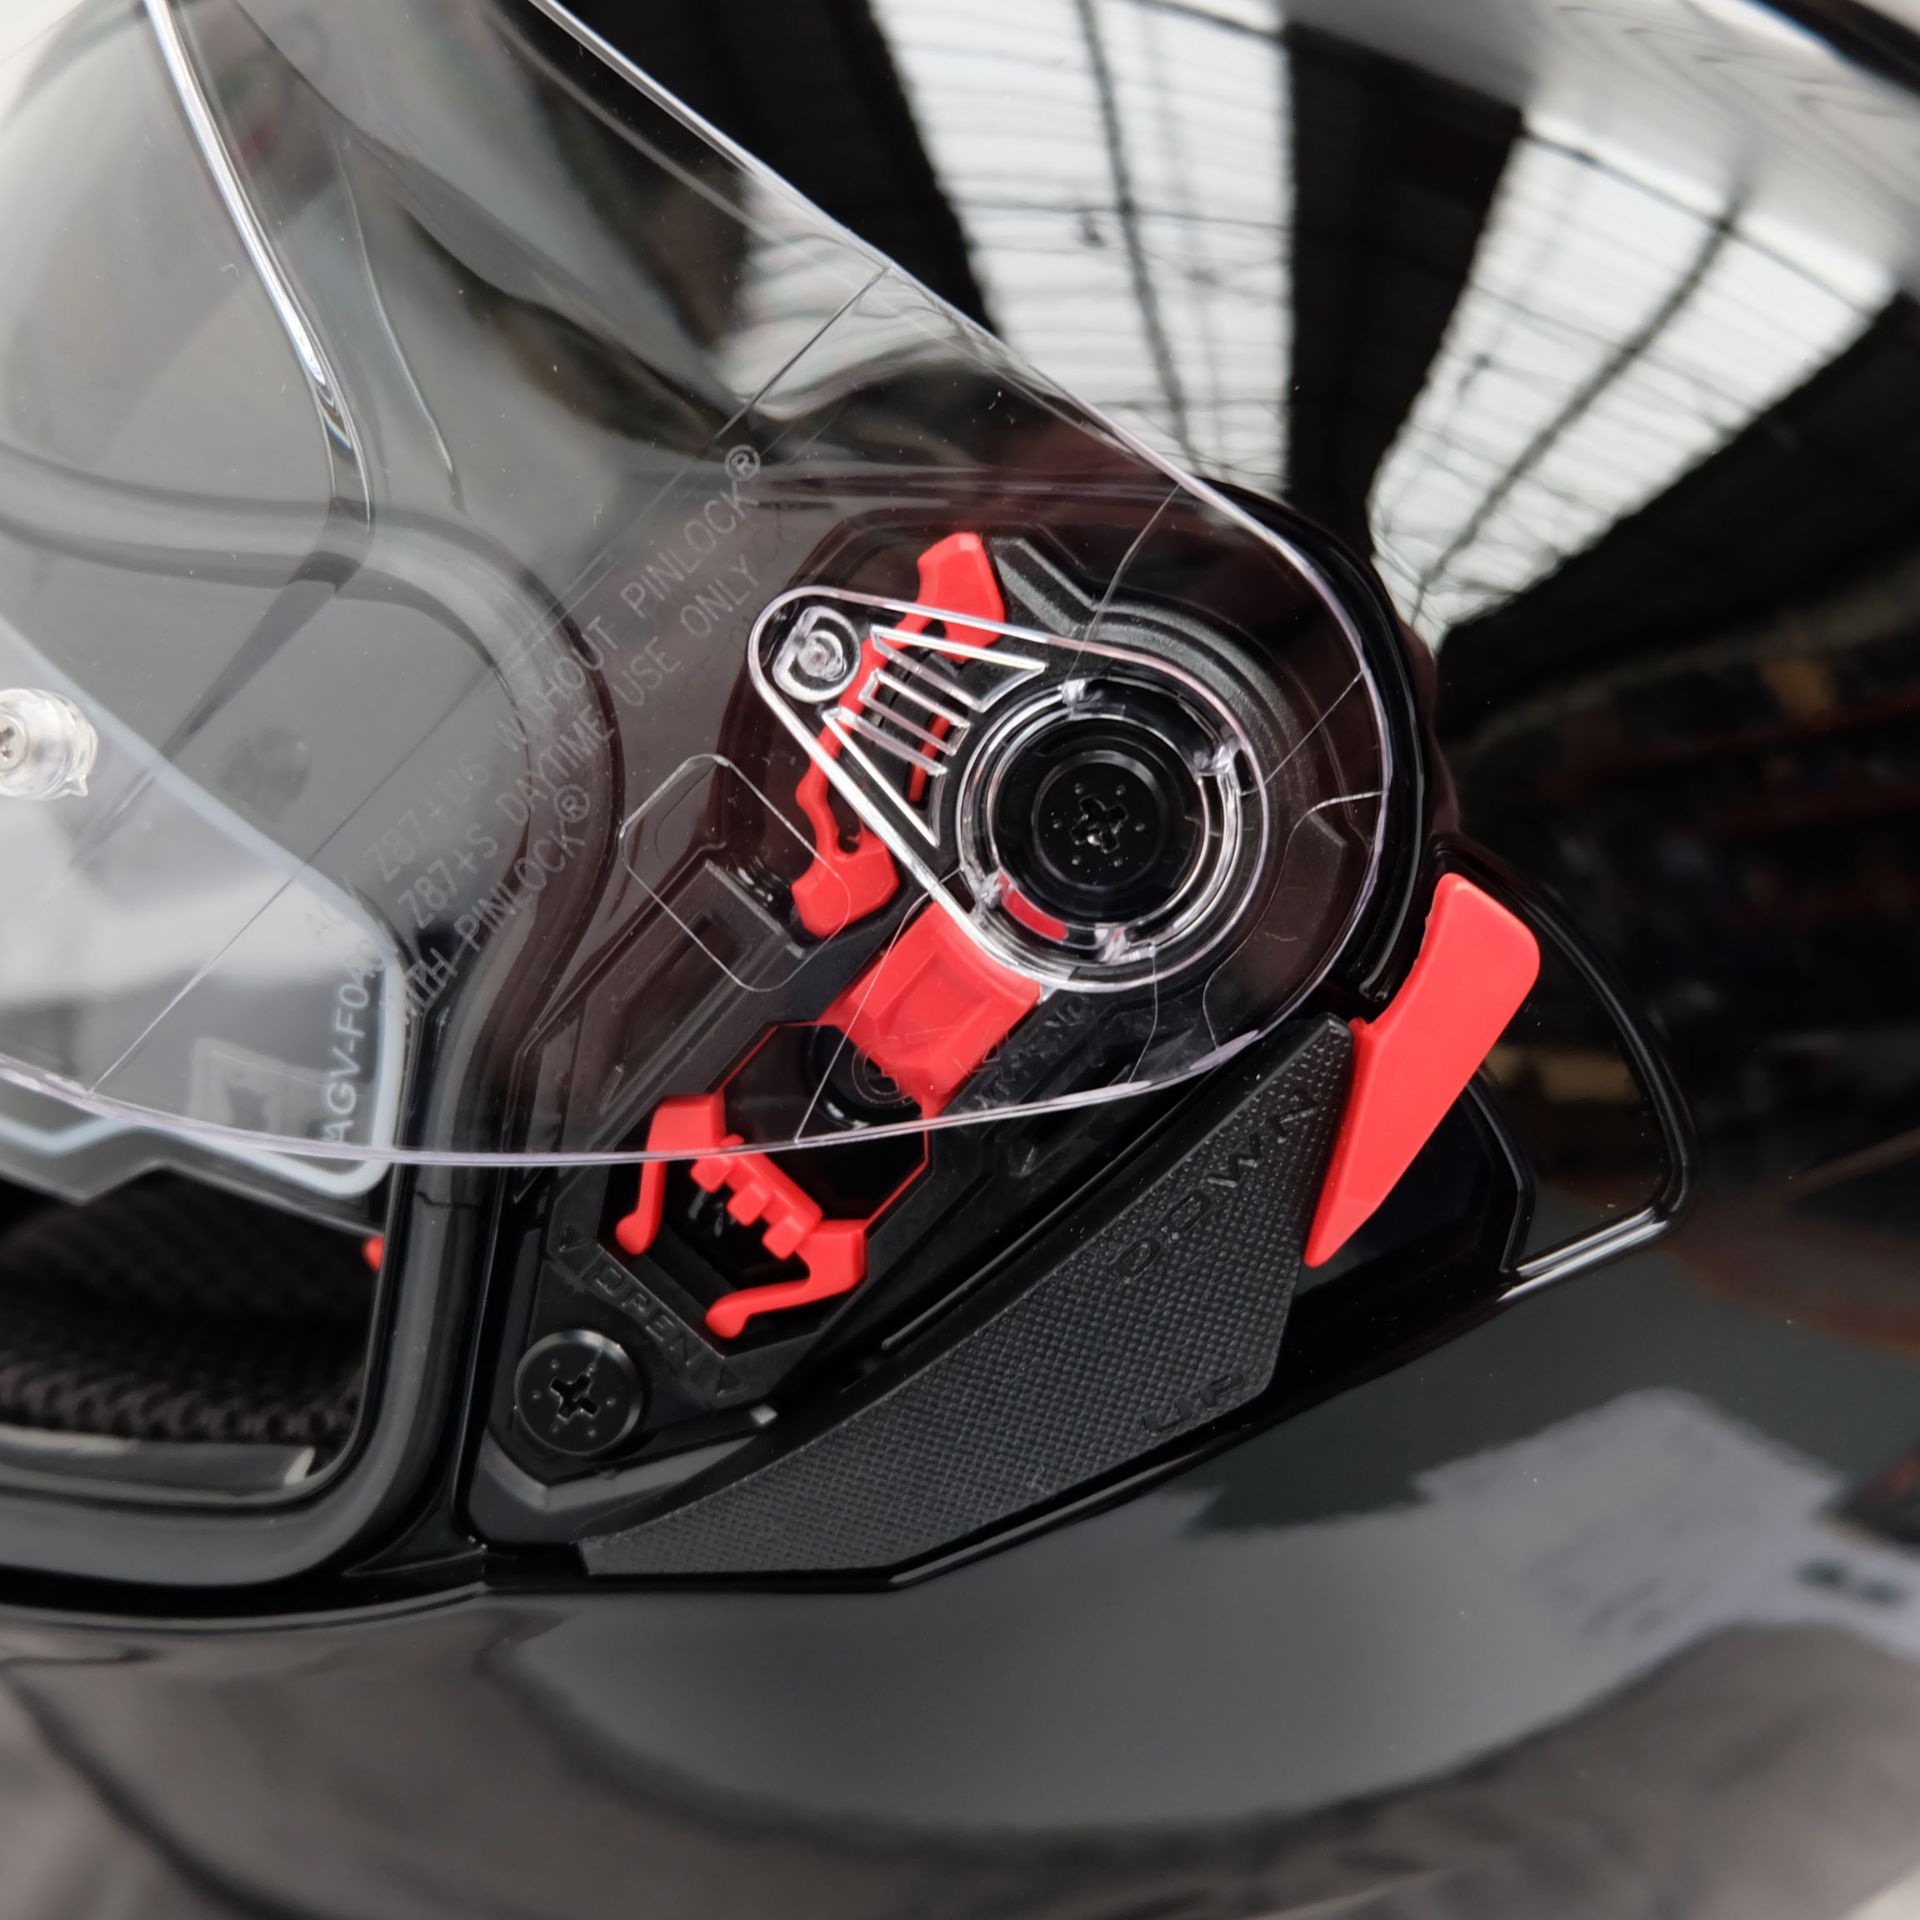 AGV K3 SV-S Full Face Helmet Black Size Small - Image 9 of 14